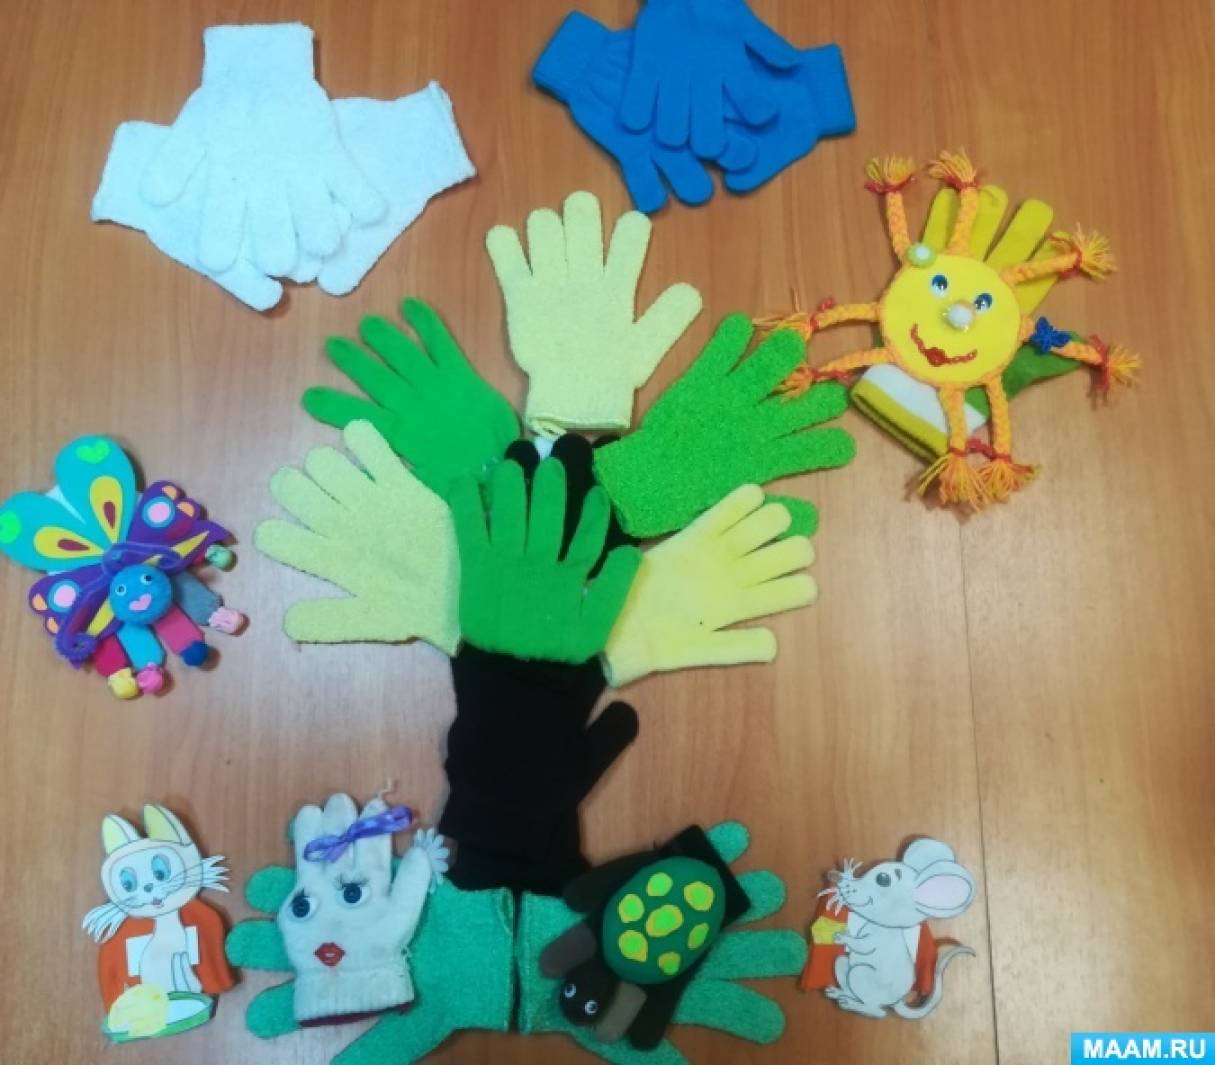 Как правильно использовать резиновые перчатки?